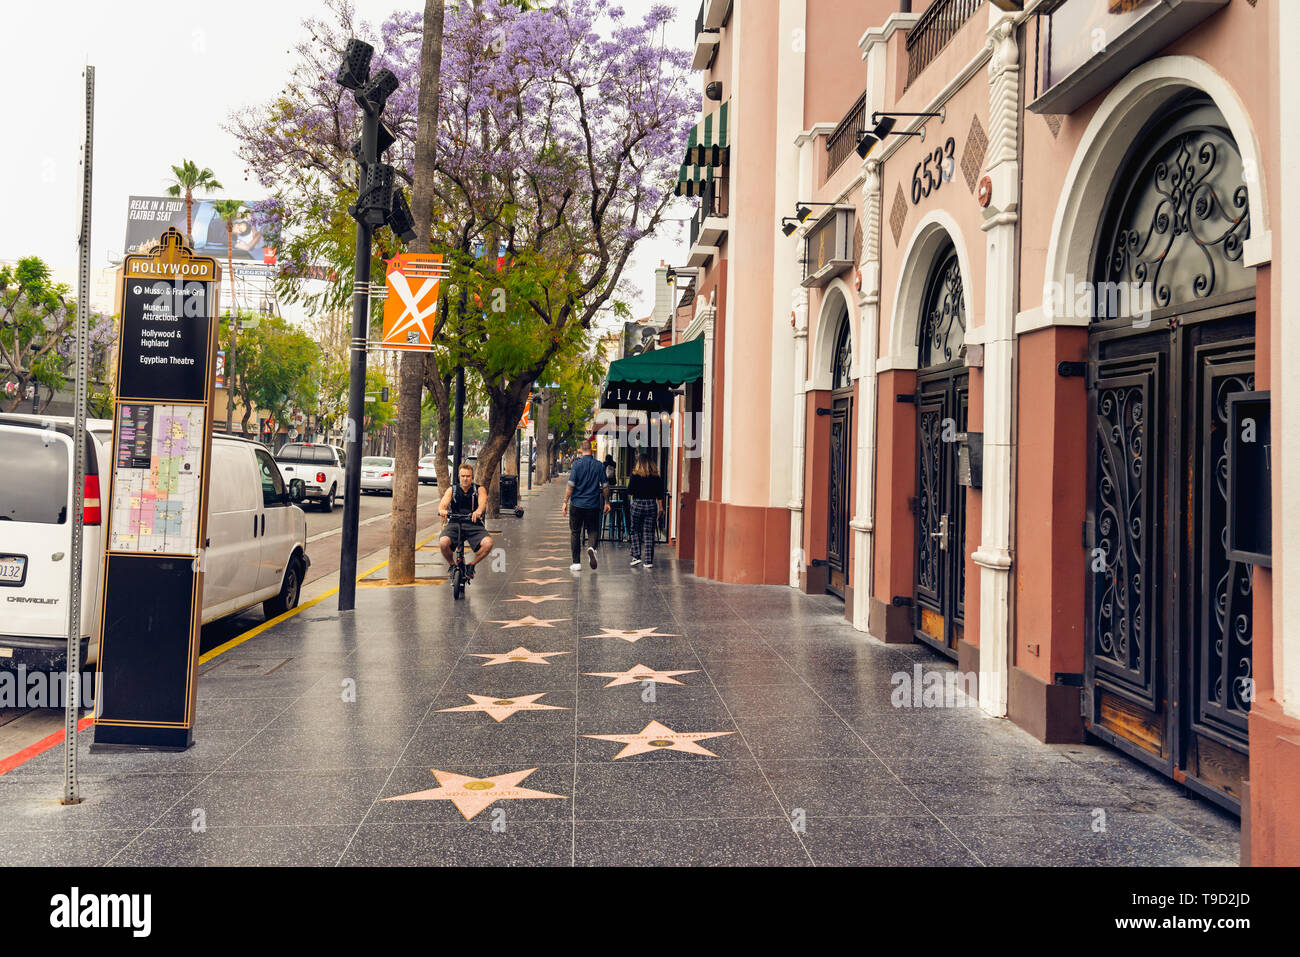 Hollywood Walk of Fame au matin. Coin de Hollywood Wax Museum et touristes marcher sur les étoiles. Los Angeles, Hollywood, Californie, le 14 mai, 2019 Banque D'Images